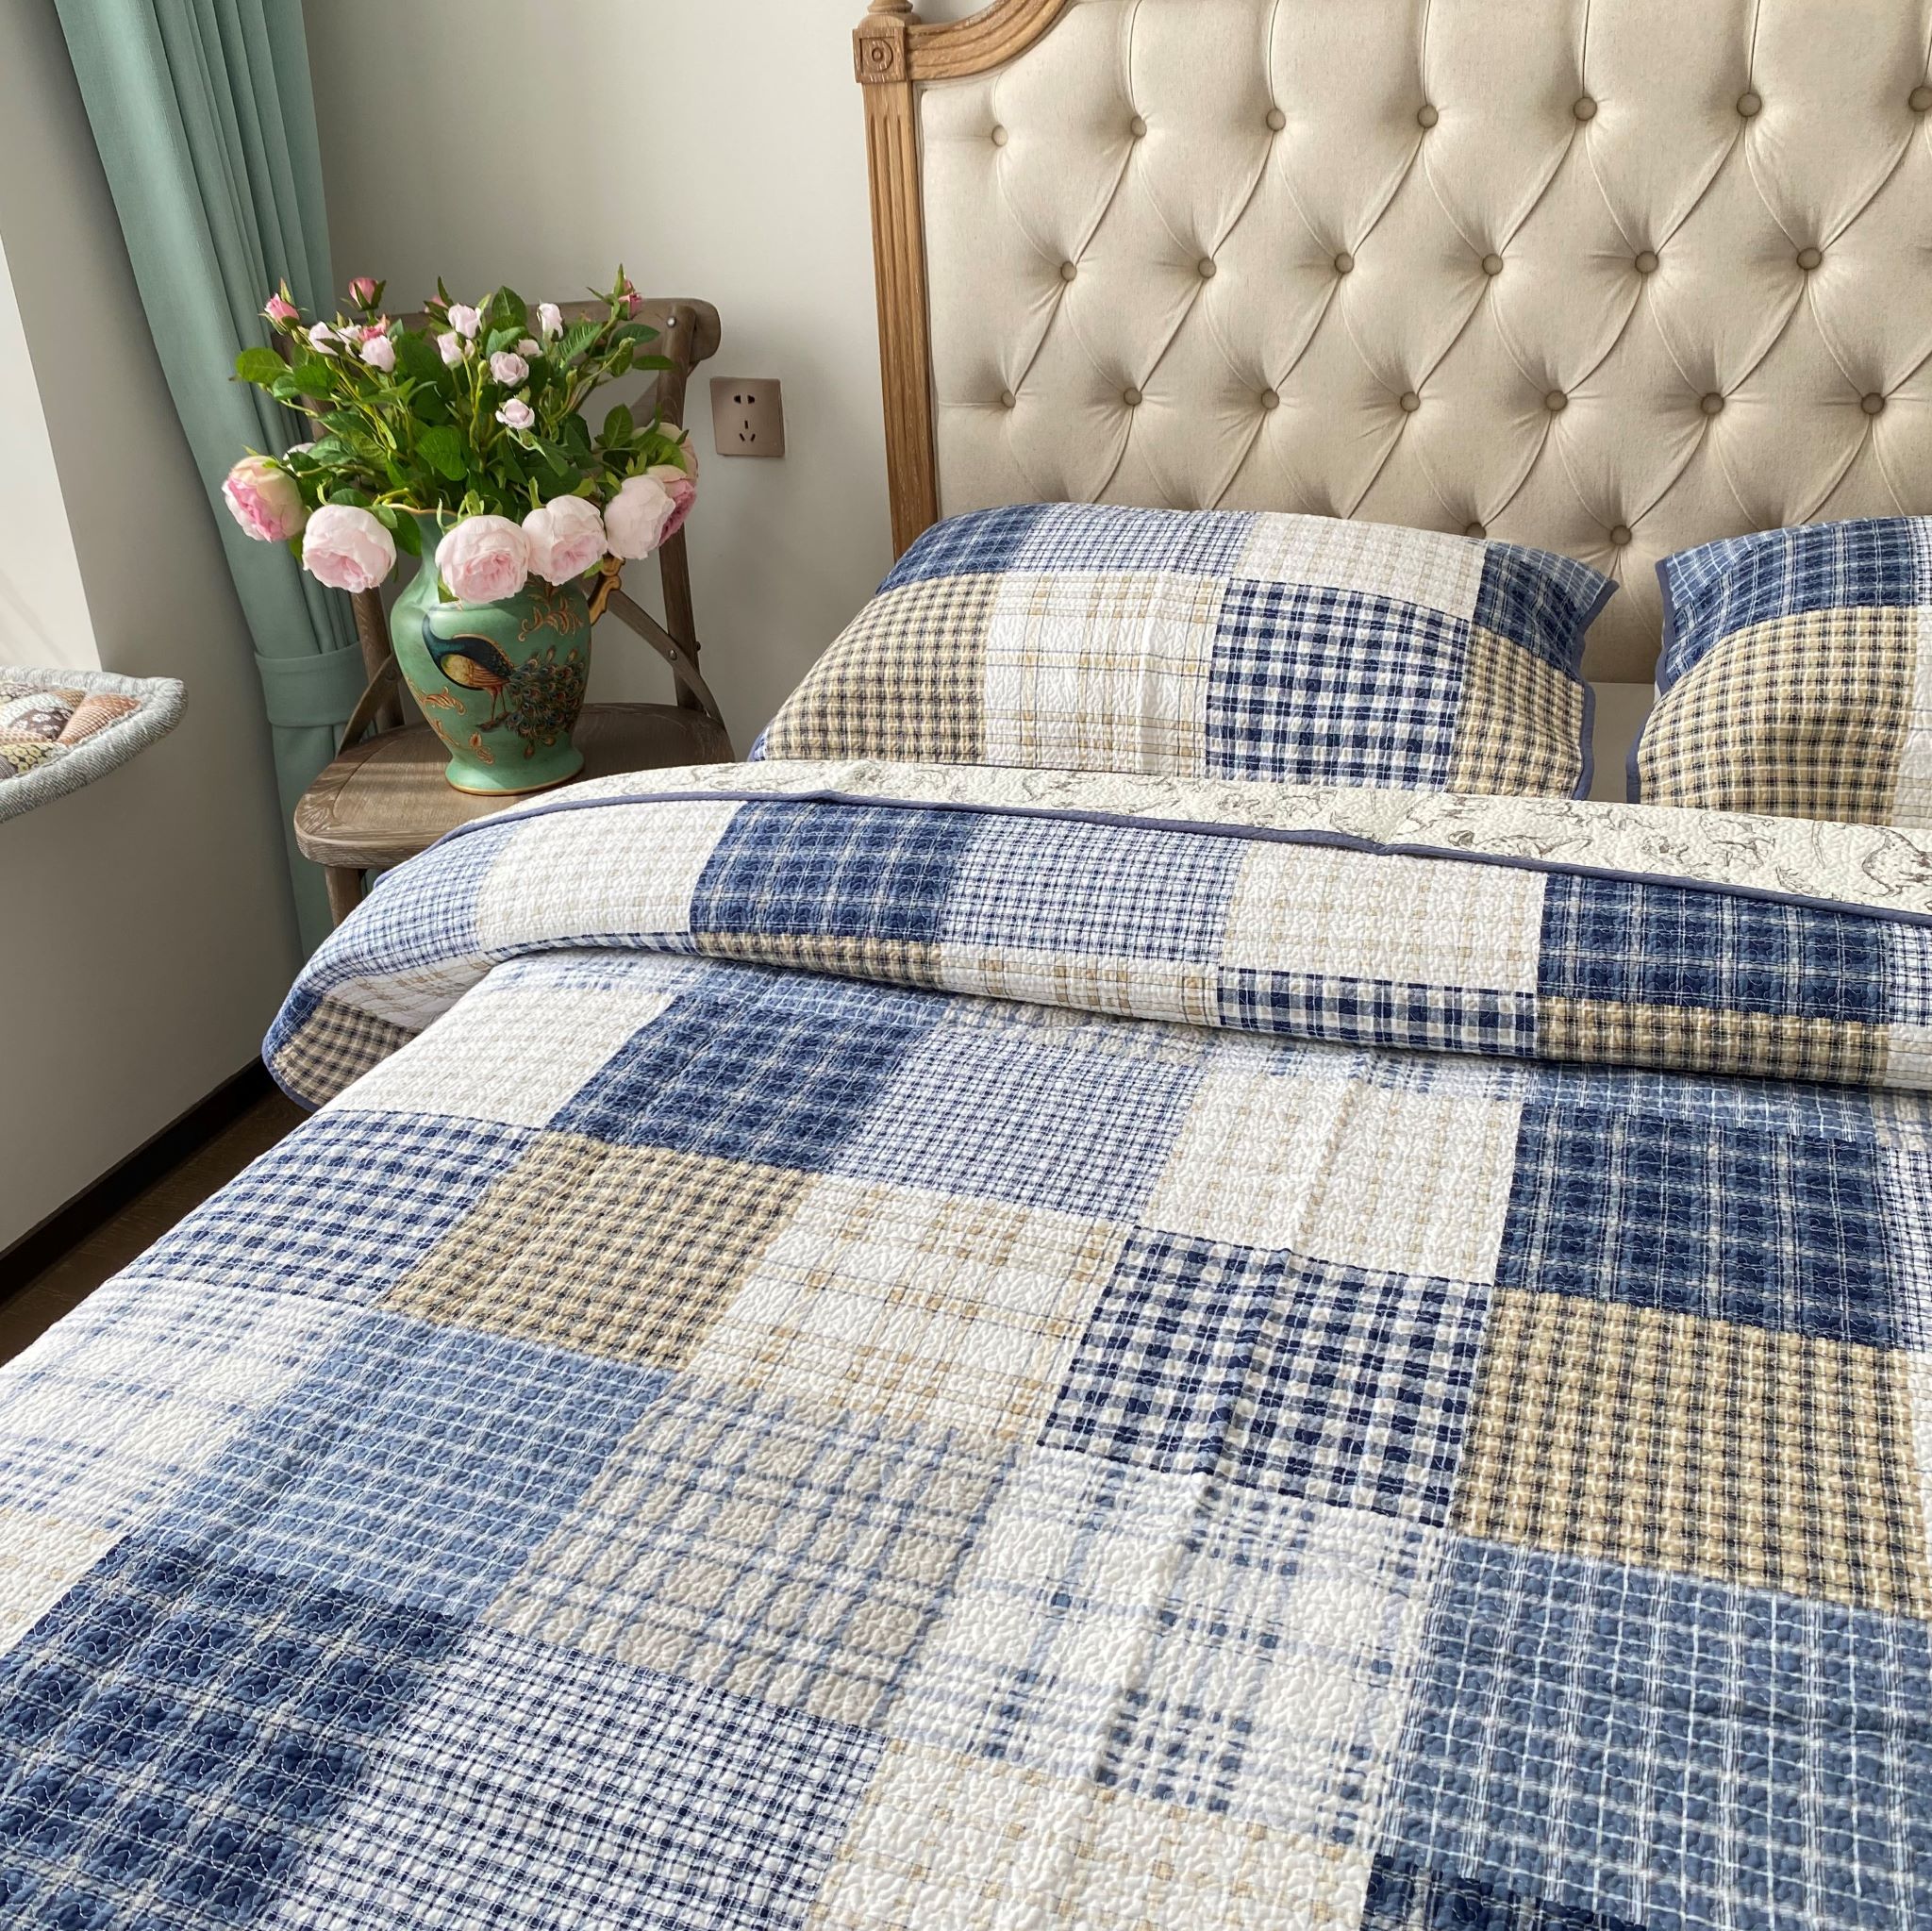 Flowering床盖床单绗缝被全棉纯棉夹棉加厚空调被三件套格子1.5米 - 图1